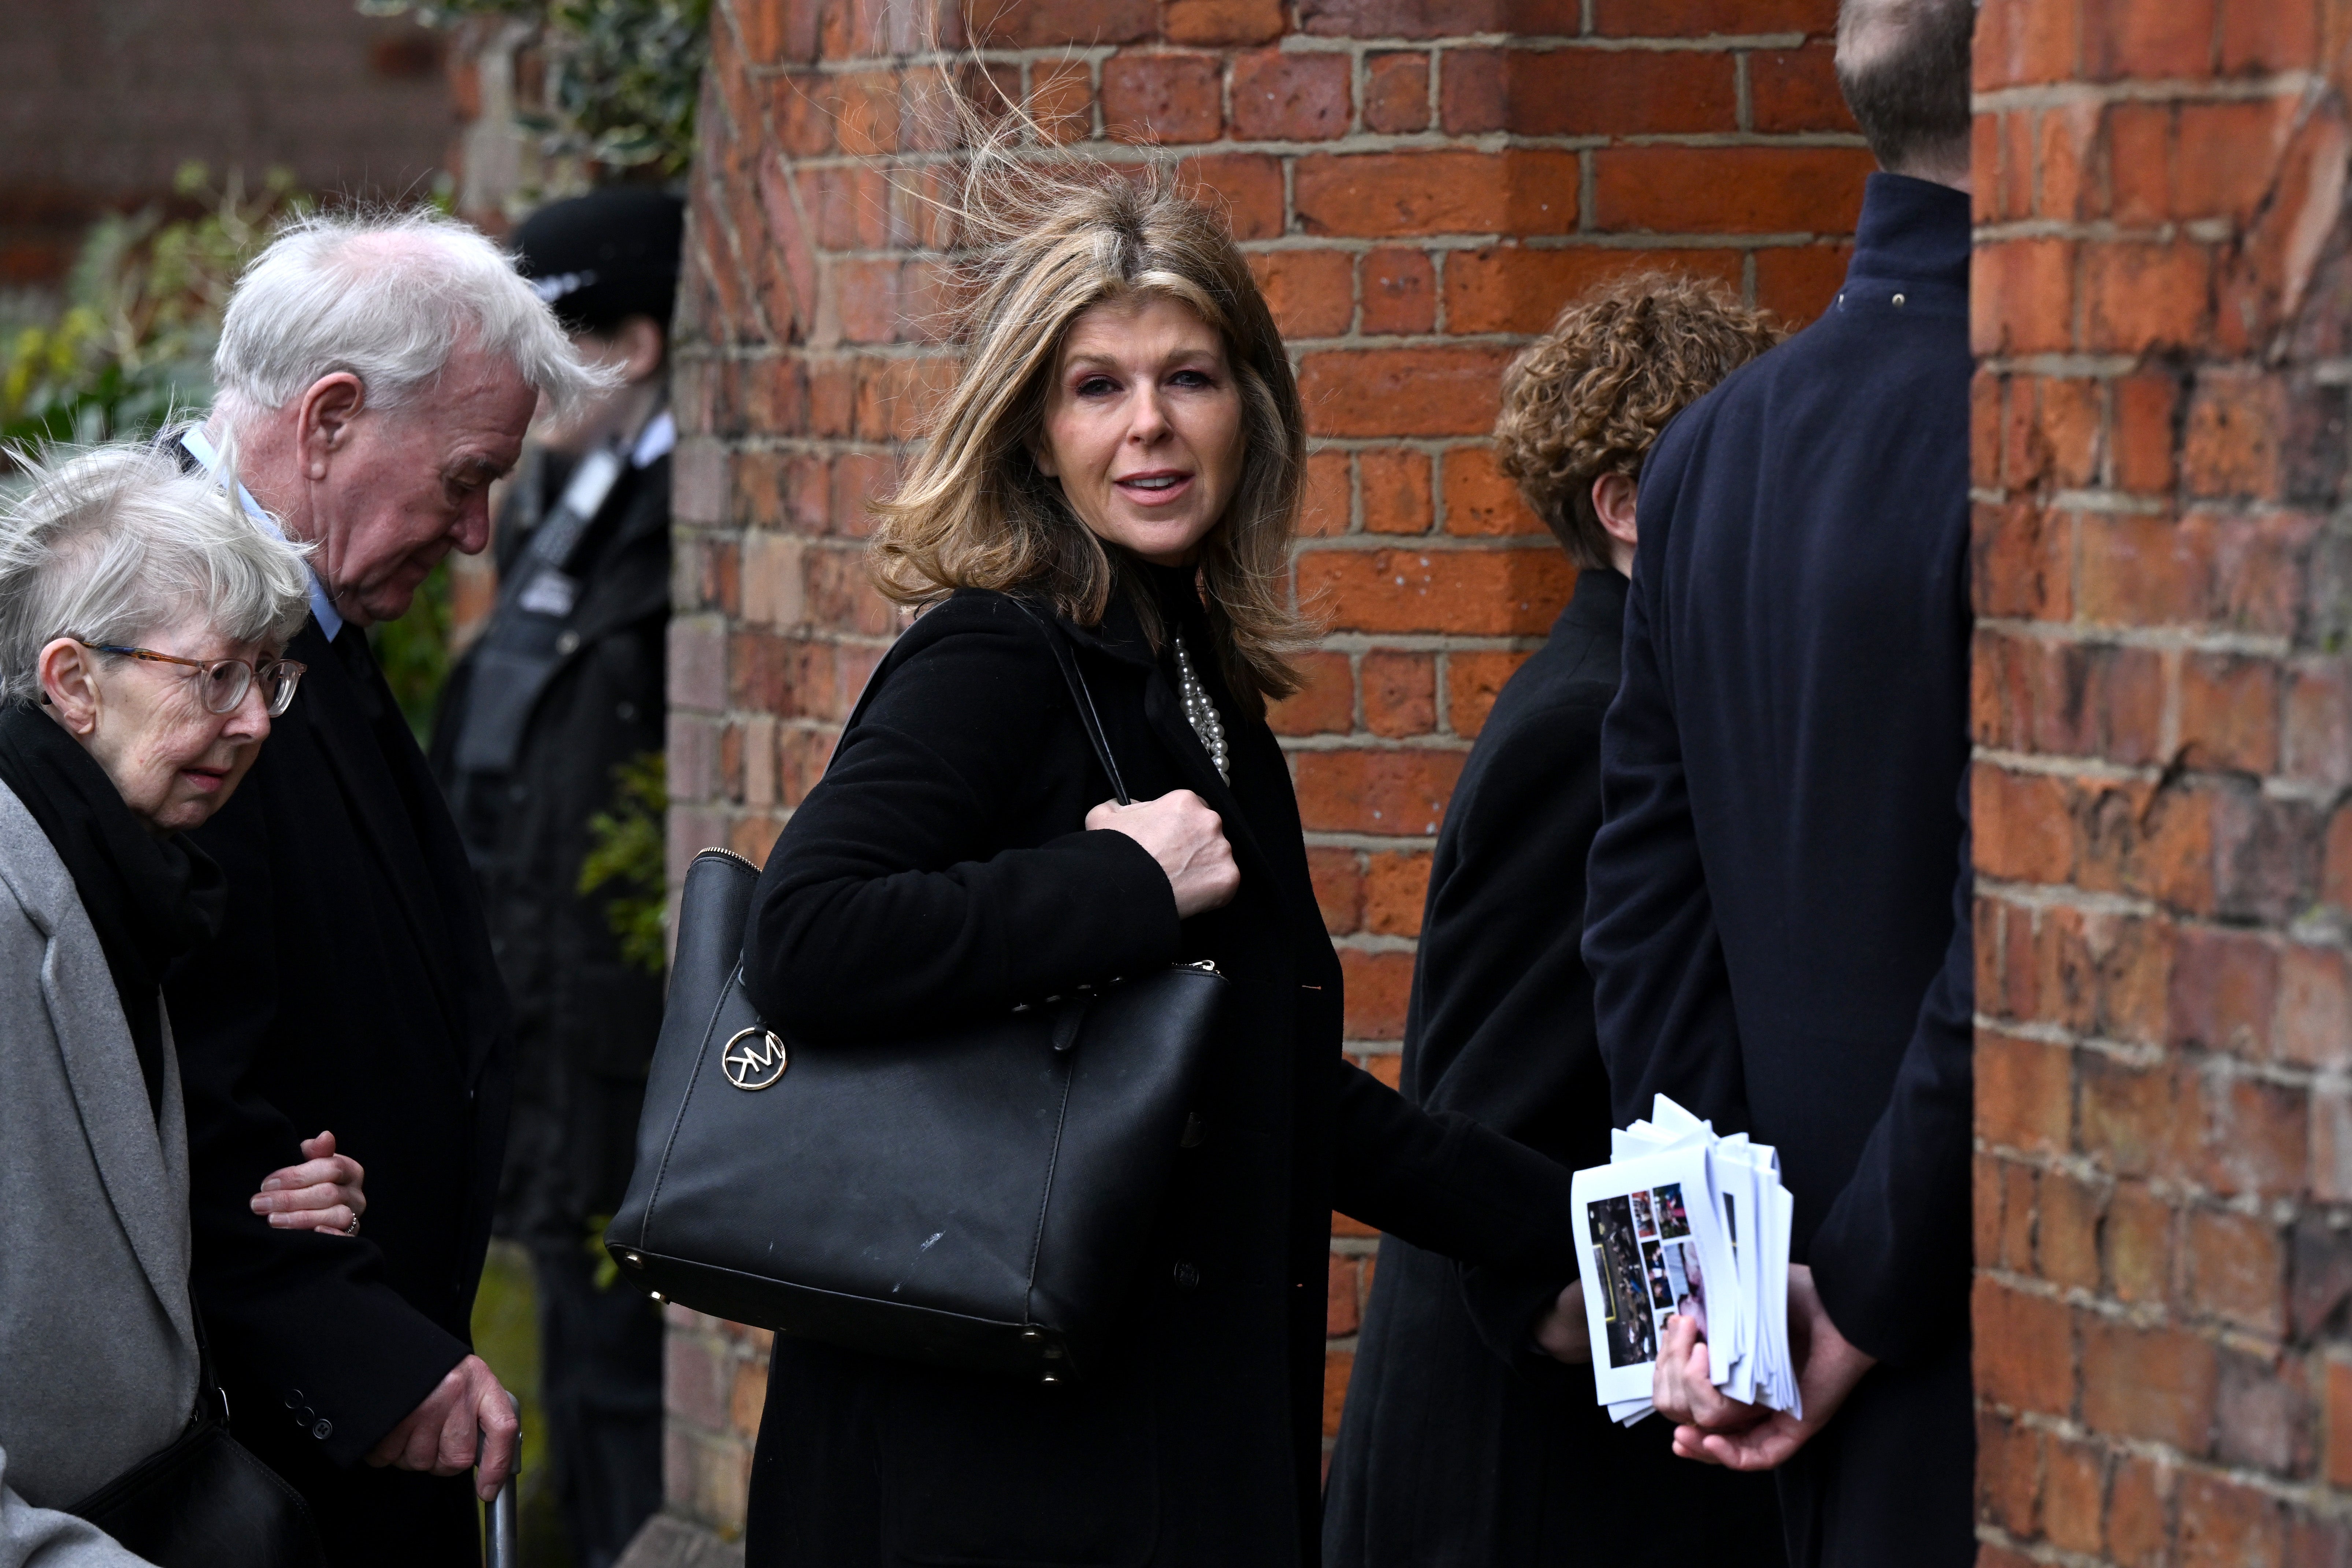 Kate Garraway attends the funeral of her husband, Derek Draper